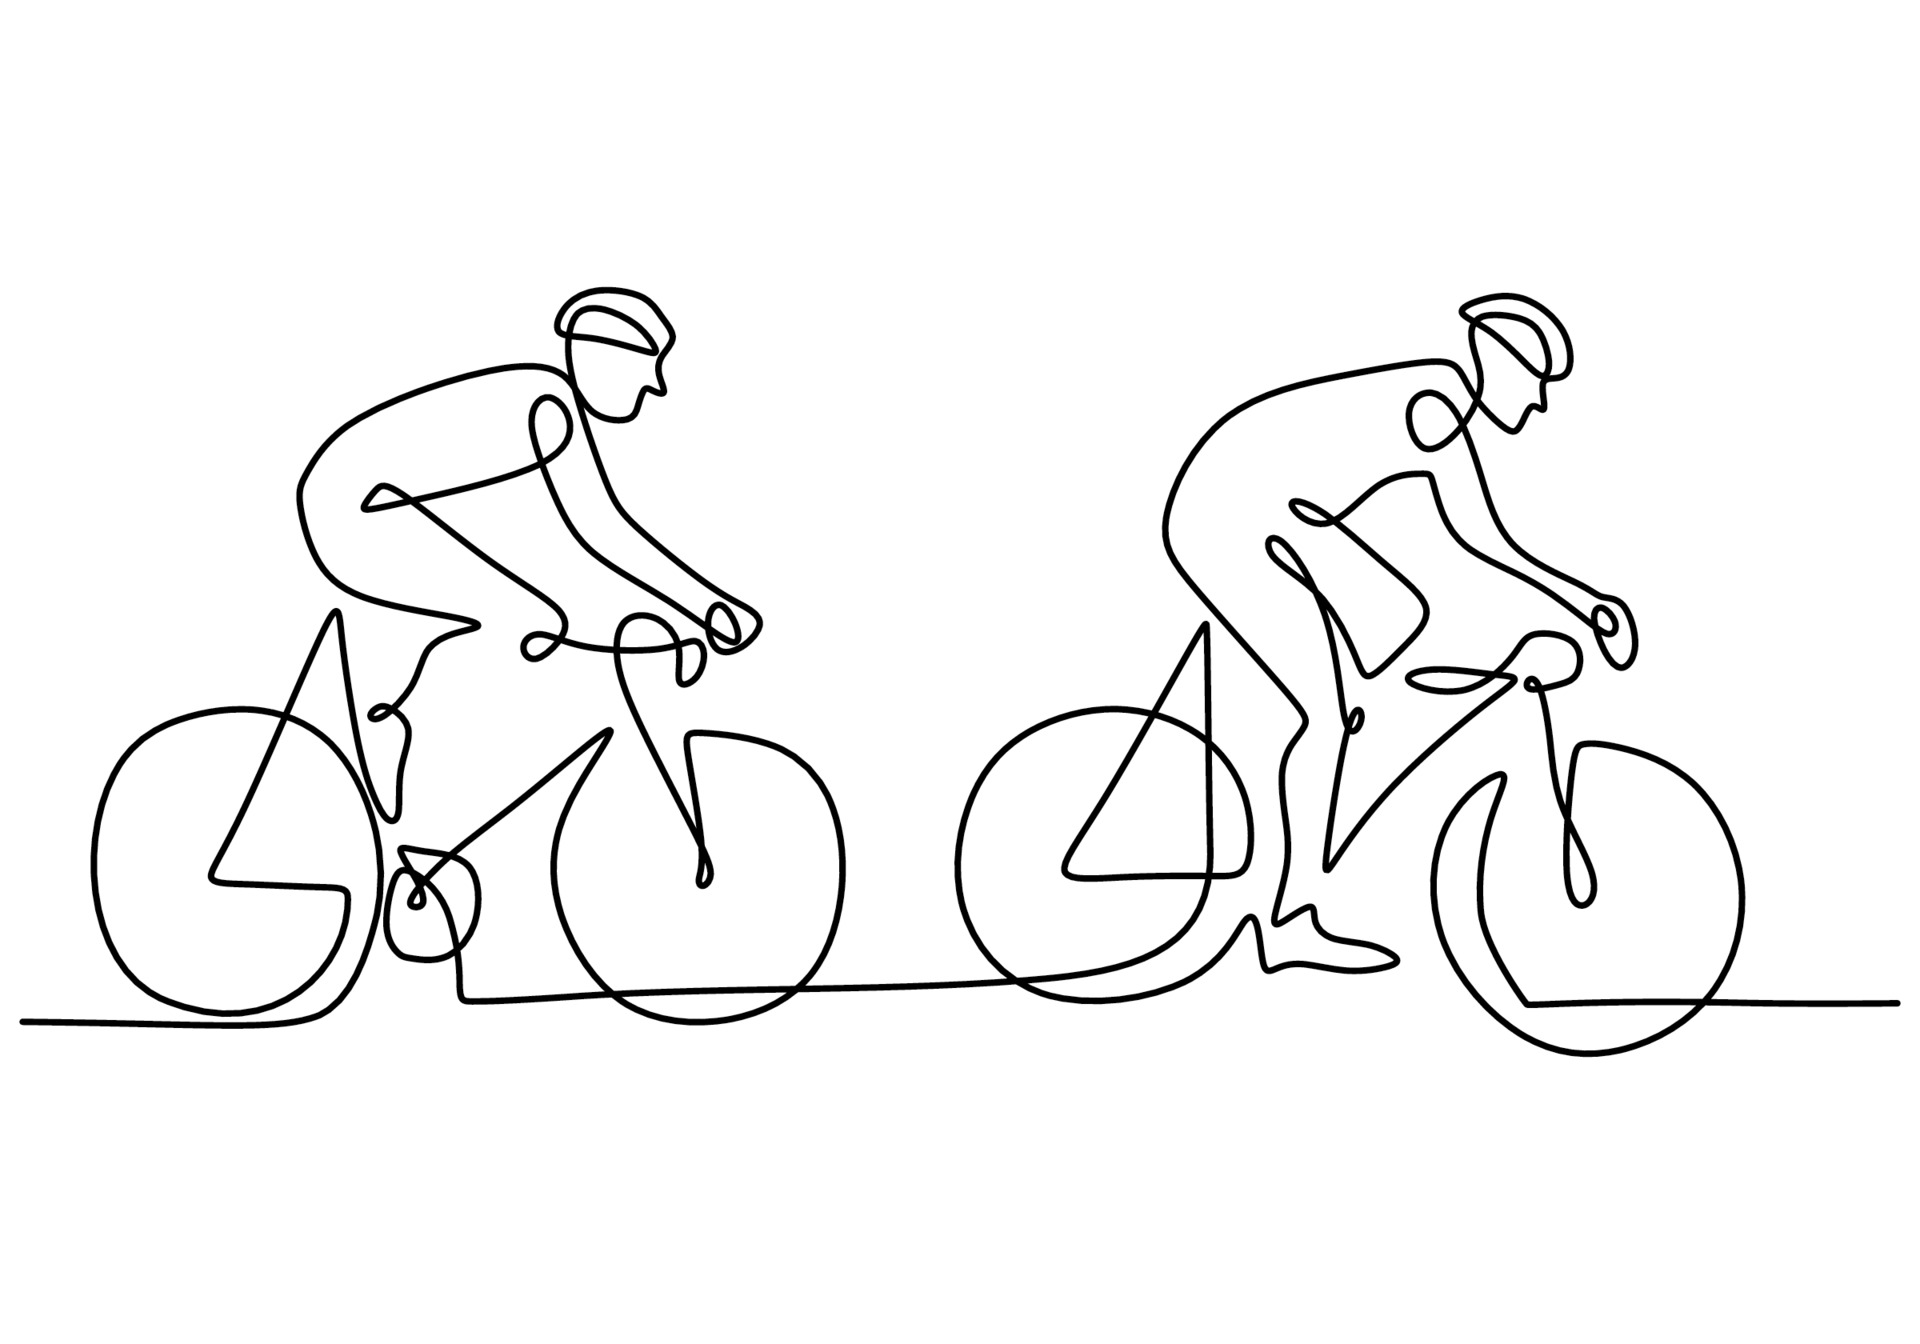 Un dessin au trait continu du jeune homme Ã©nergique course de cycliste sur  piste cyclable. concept de cycliste de course. conception de dessin Ã  la  main pour le style minimaliste de banniÃ¨re